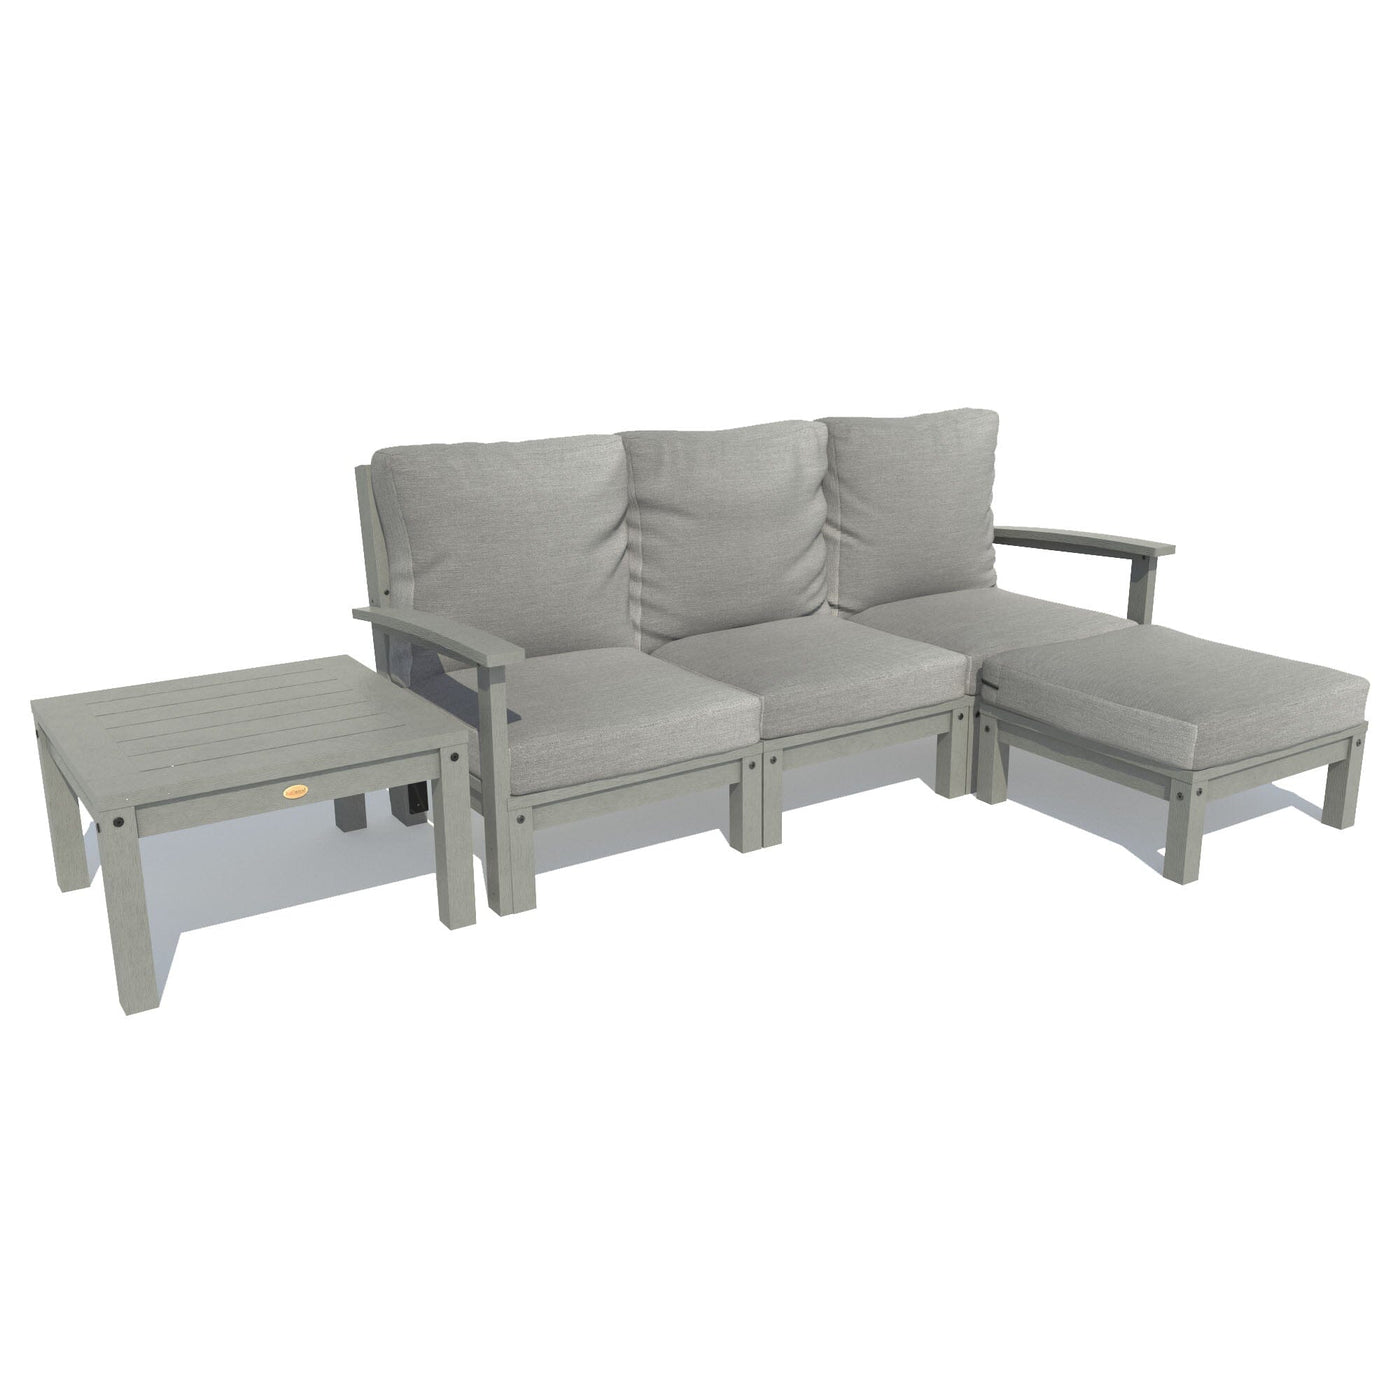 Bespoke Deep Seating: Sofa, Ottoman, and Side Table Deep Seating Highwood USA Stone Gray Coastal Teak 